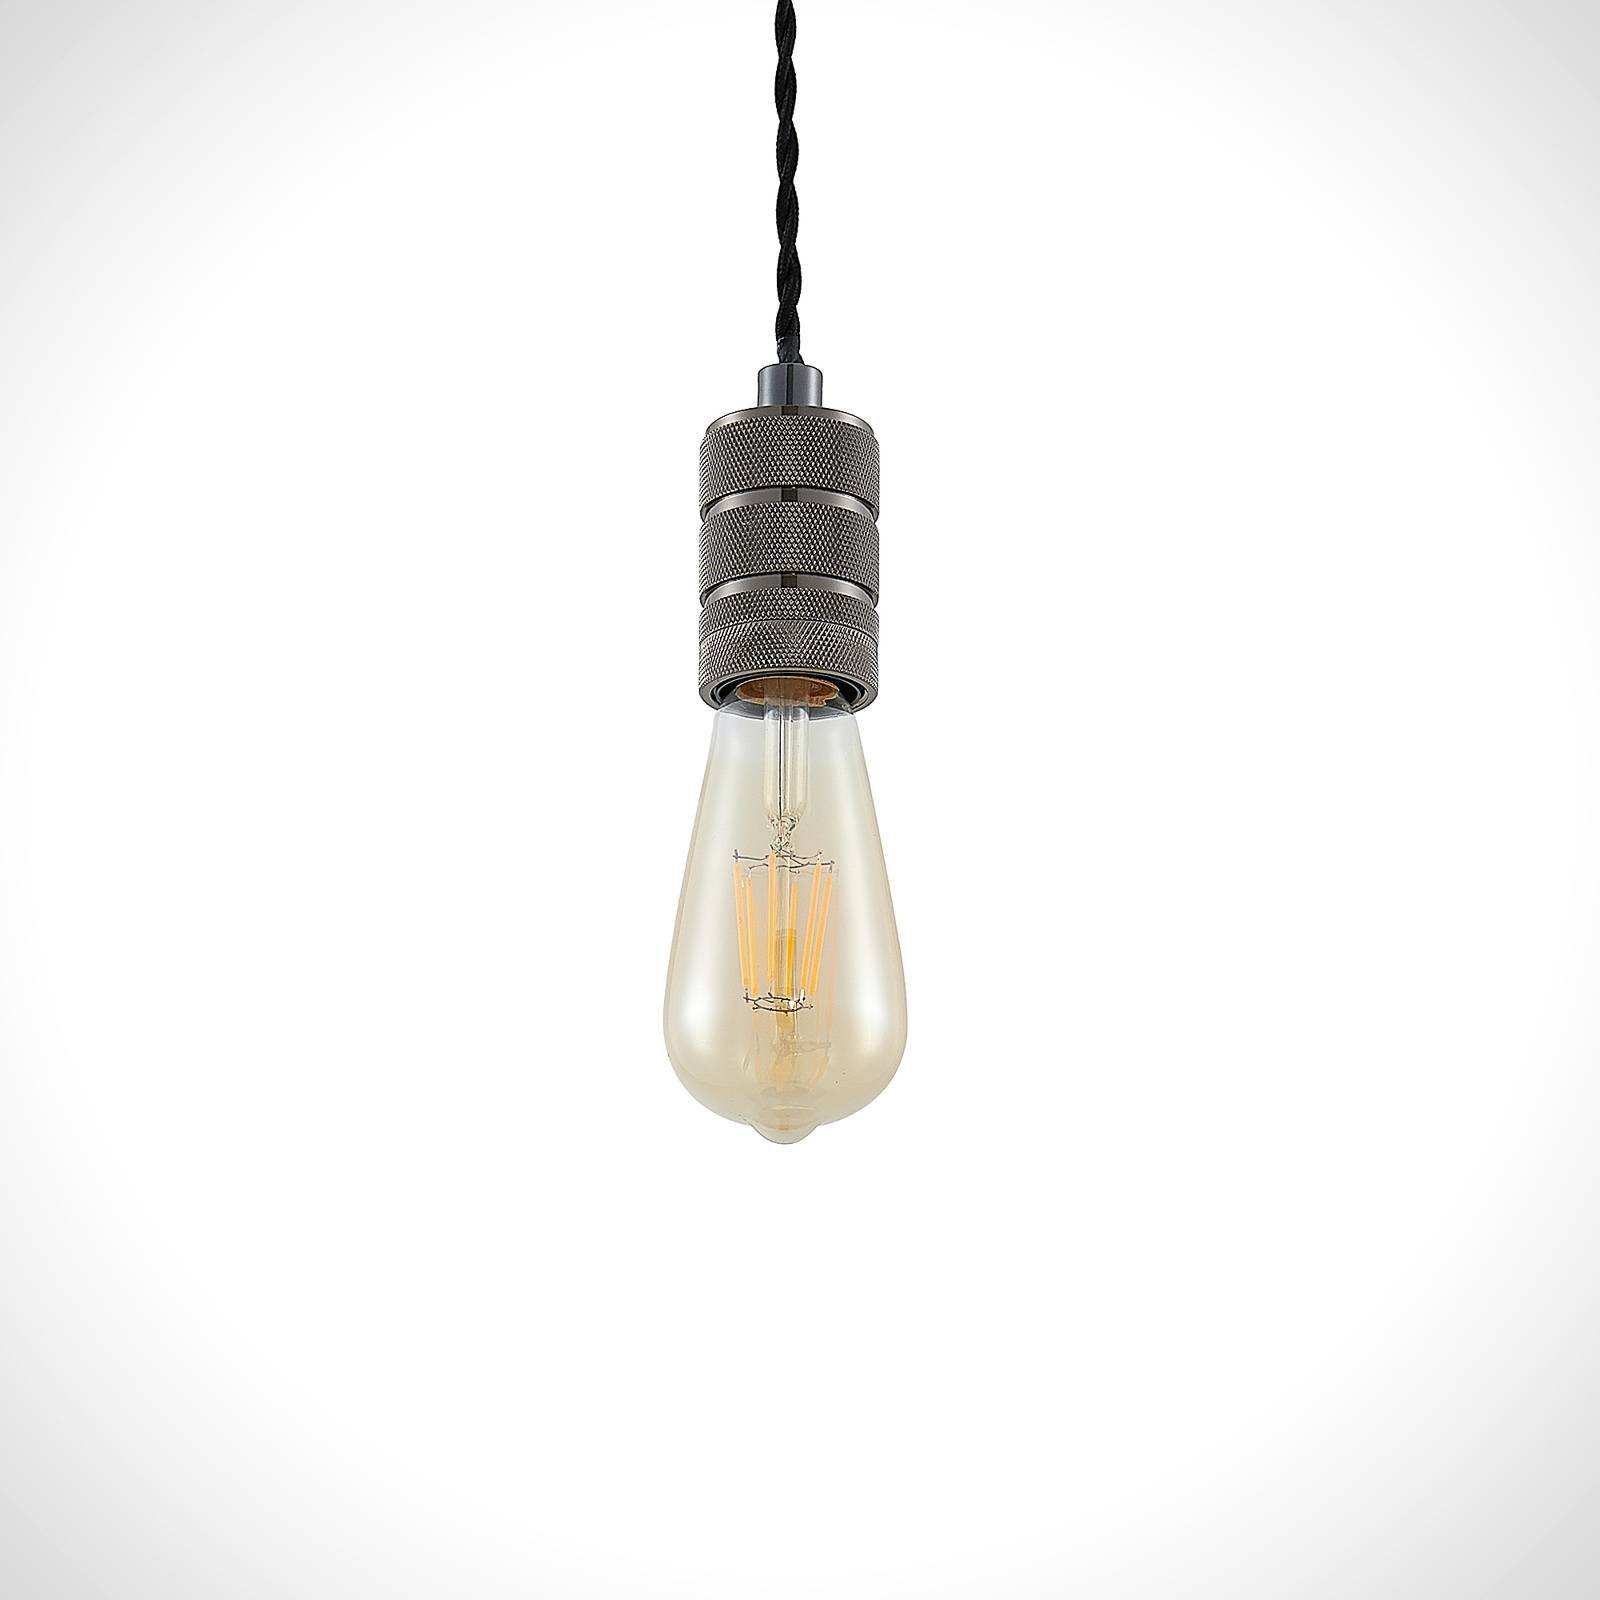 Lindby Hängeleuchte Debino, dimmbar, E27, inklusive, Esstischlampe dunkelgrau, nicht 1 flammig, Deckenlampe, Metall, Leuchtmittel